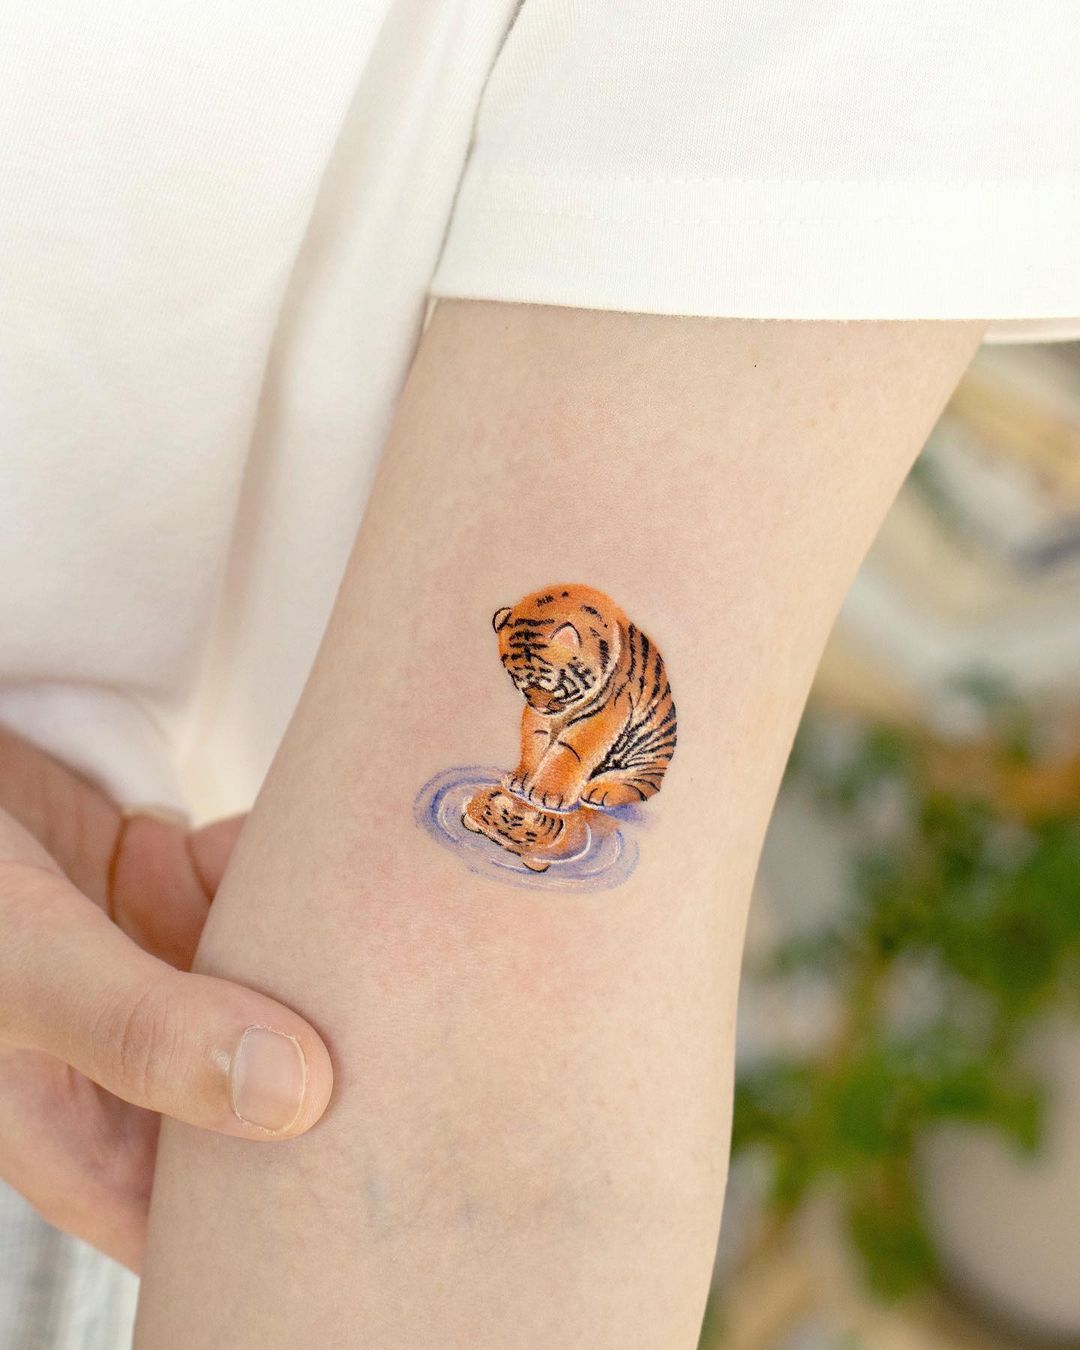 Tiger tattoo done by Jocelyn | Instagram